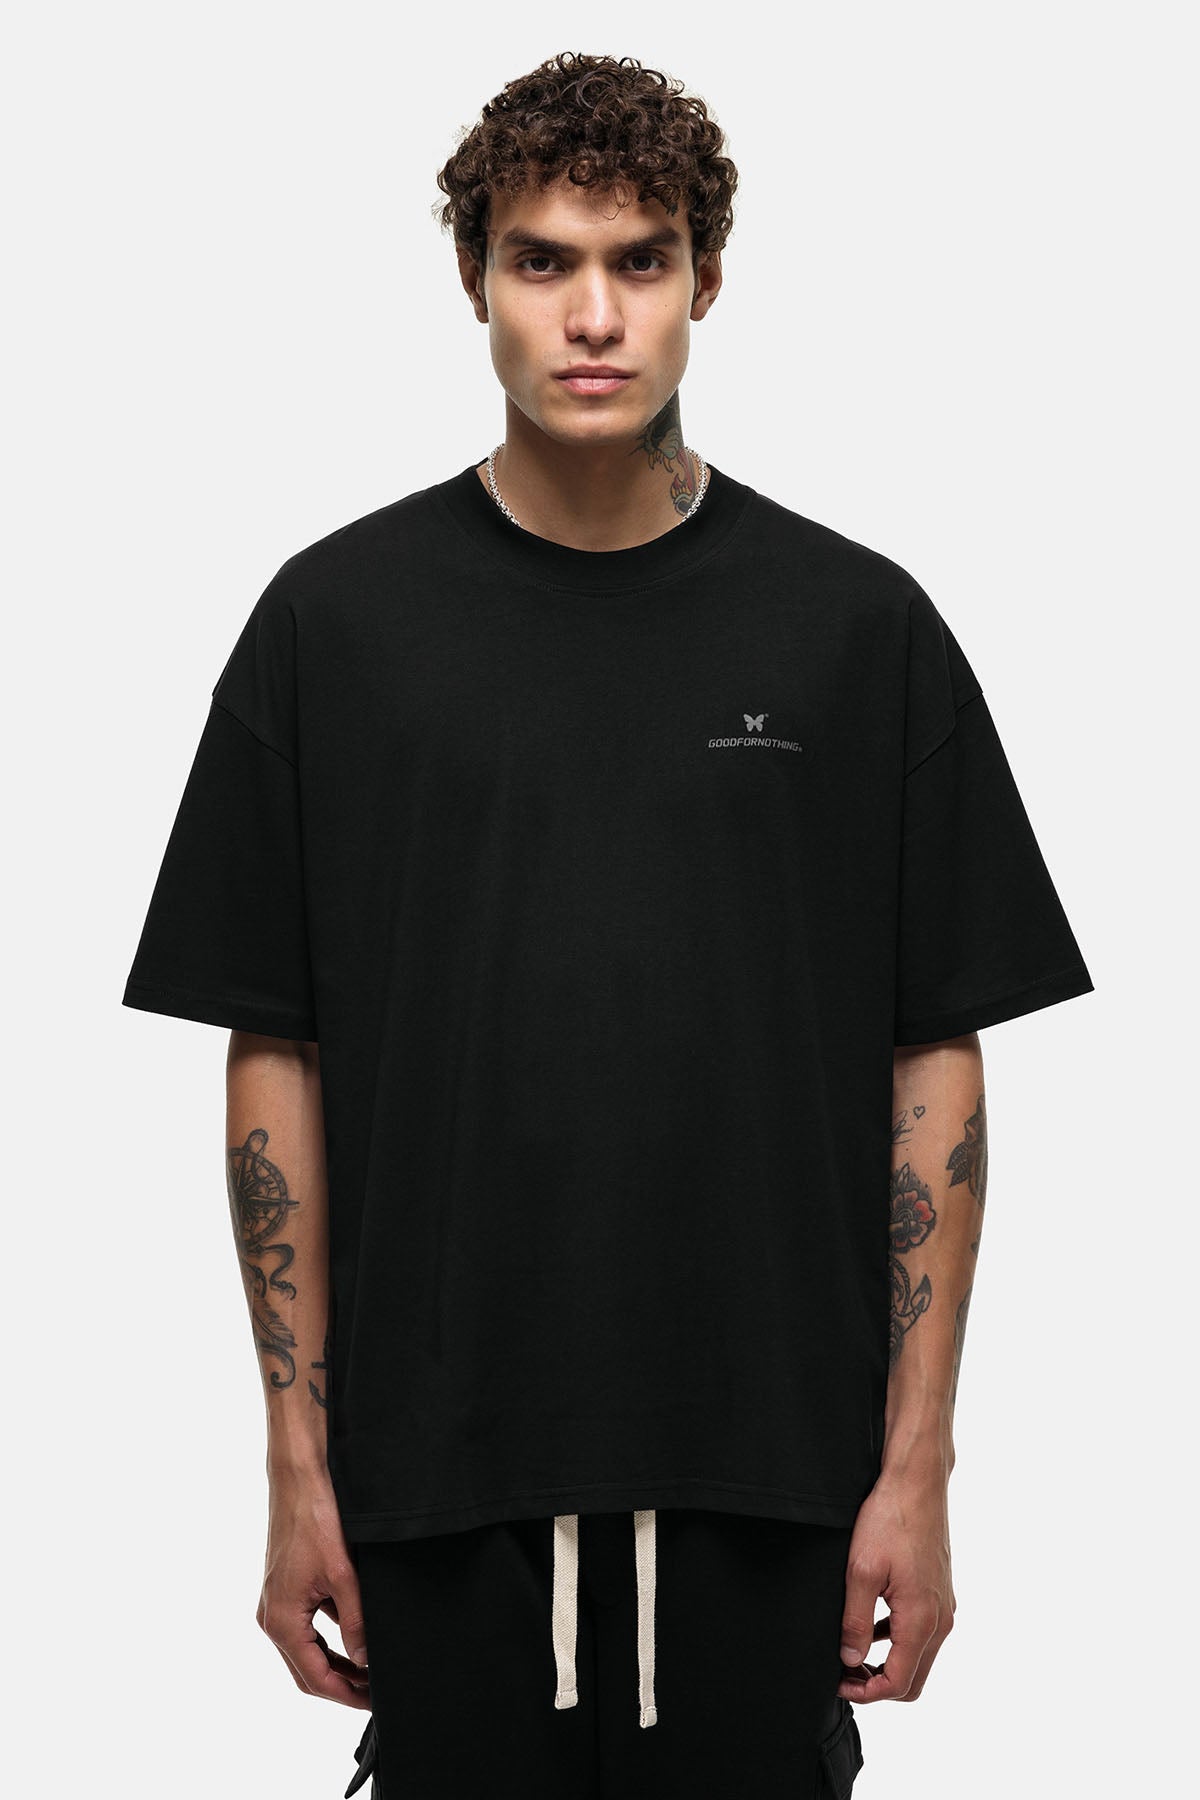 Oversized Spirit Black T-shirt